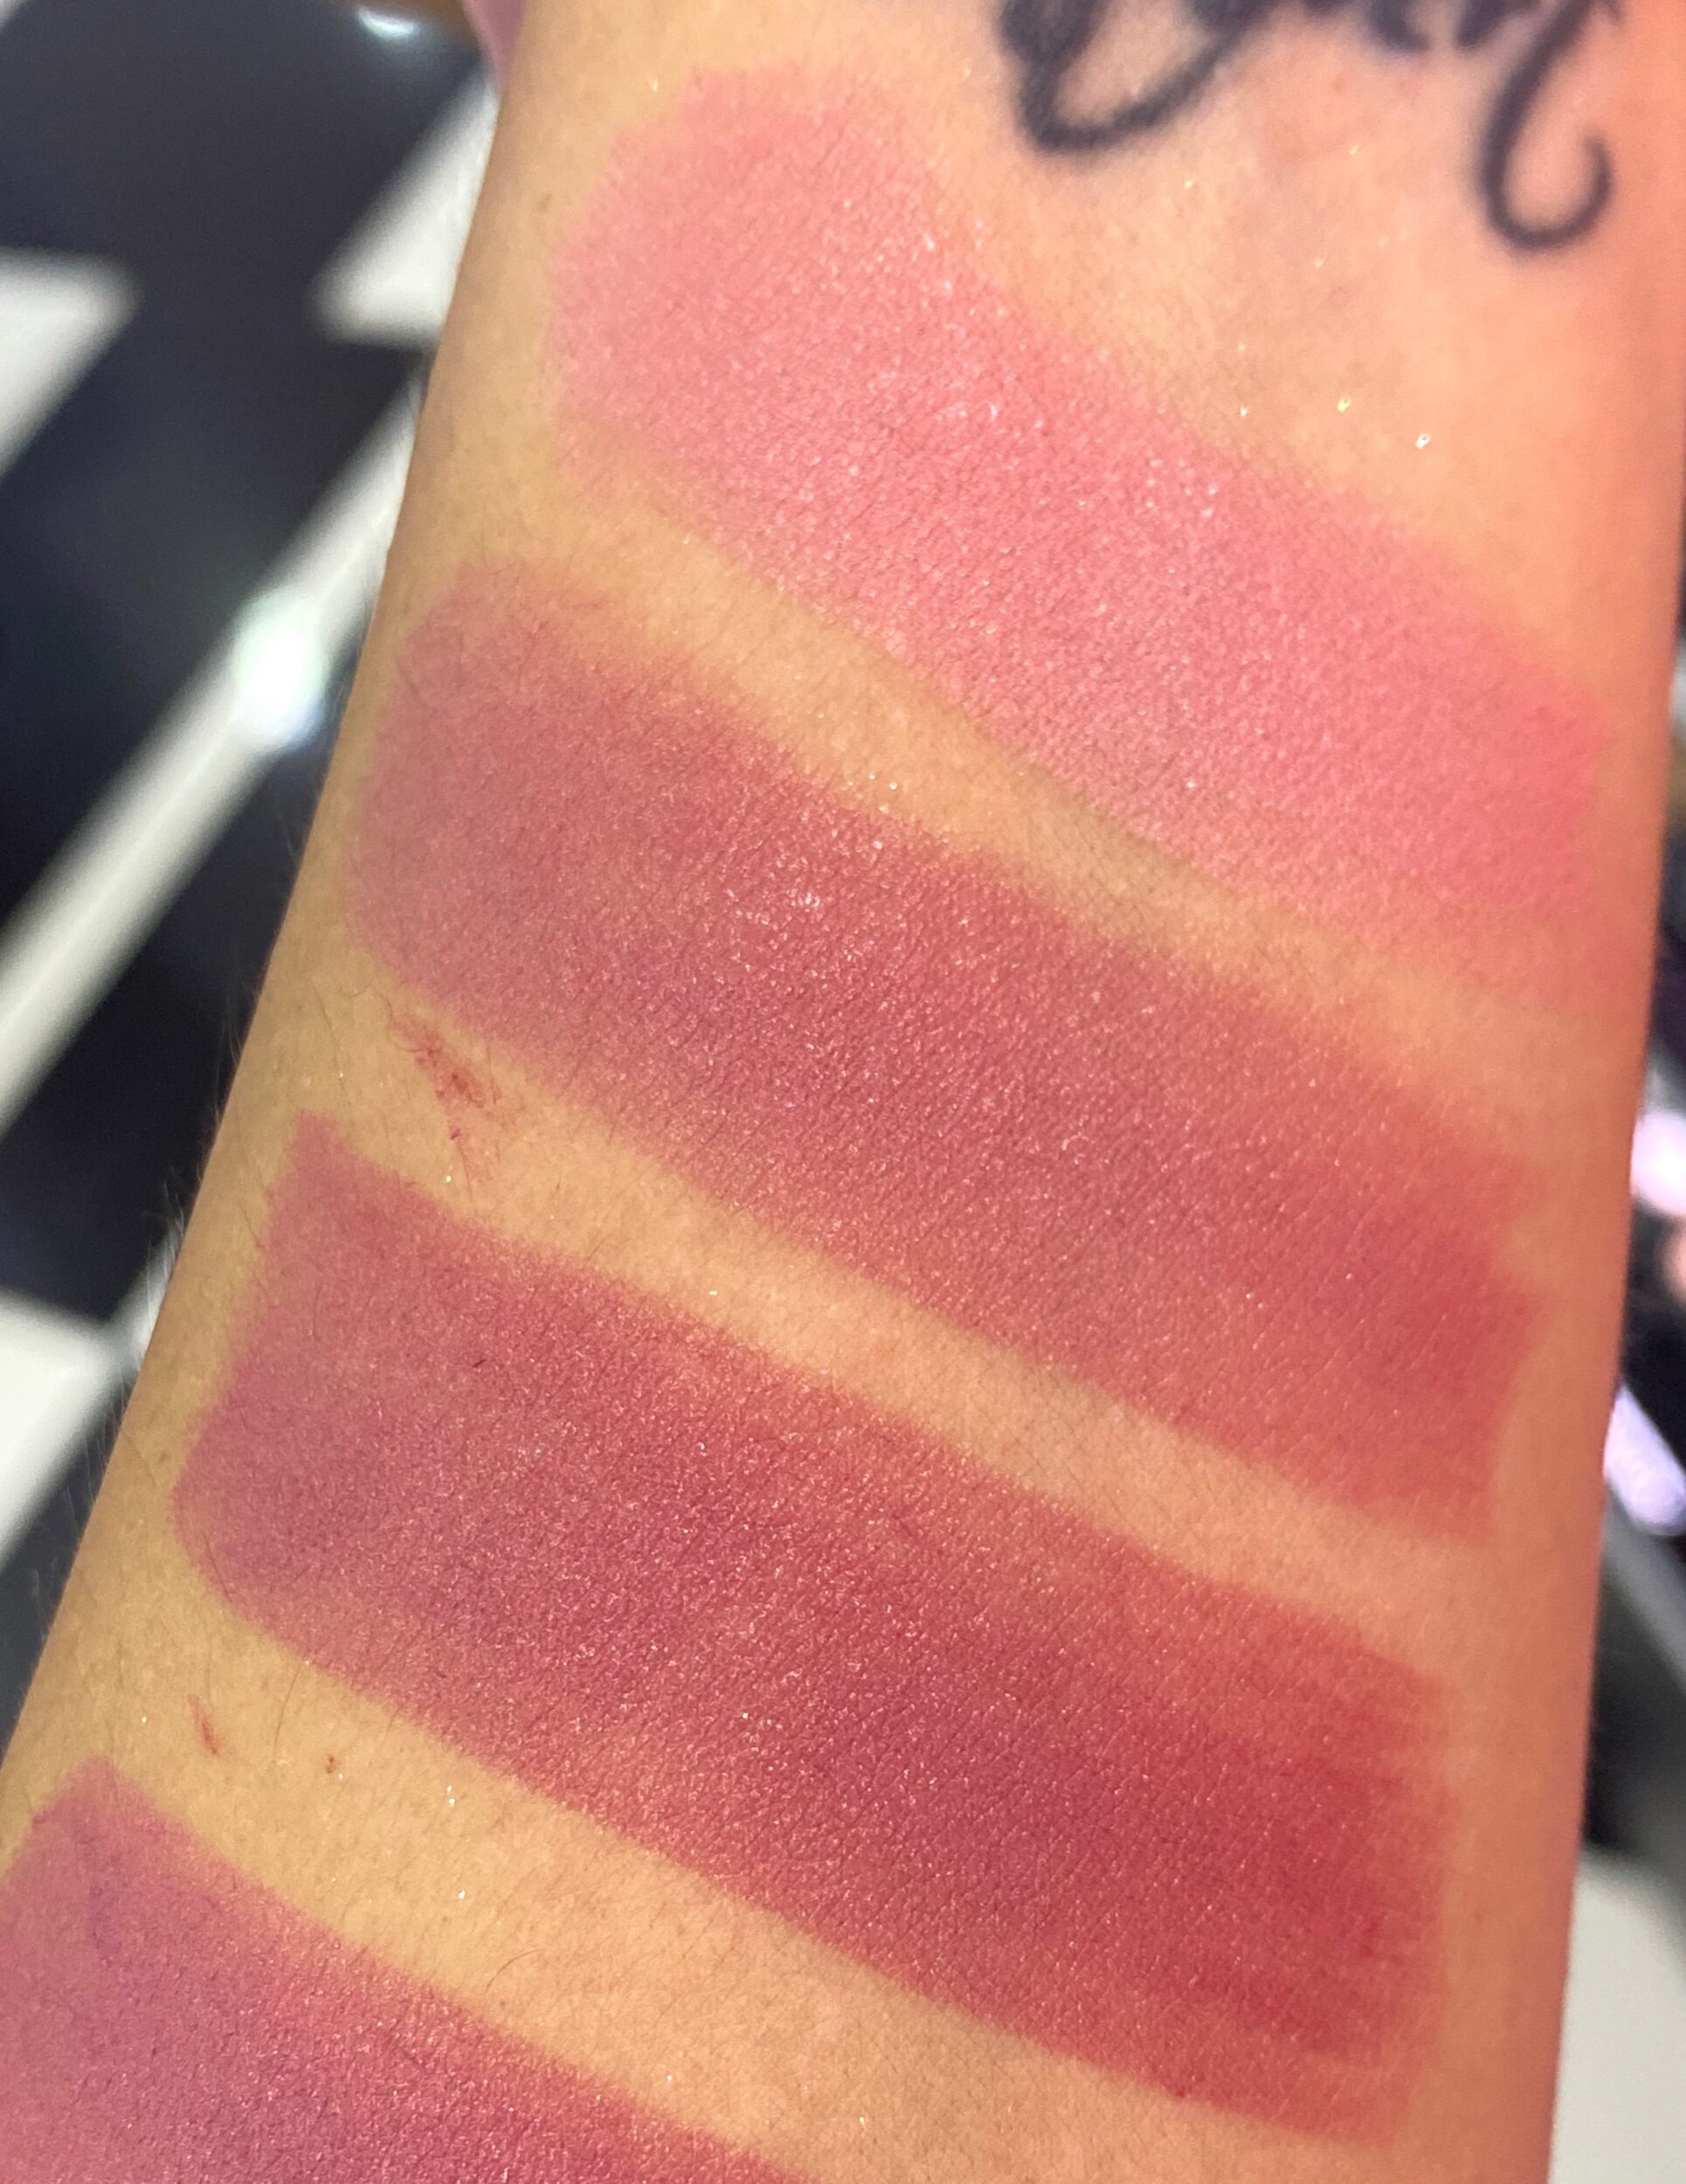 MAKE UP FOR EVER Rouge Artist Lipstick #150 Inspiring Petal